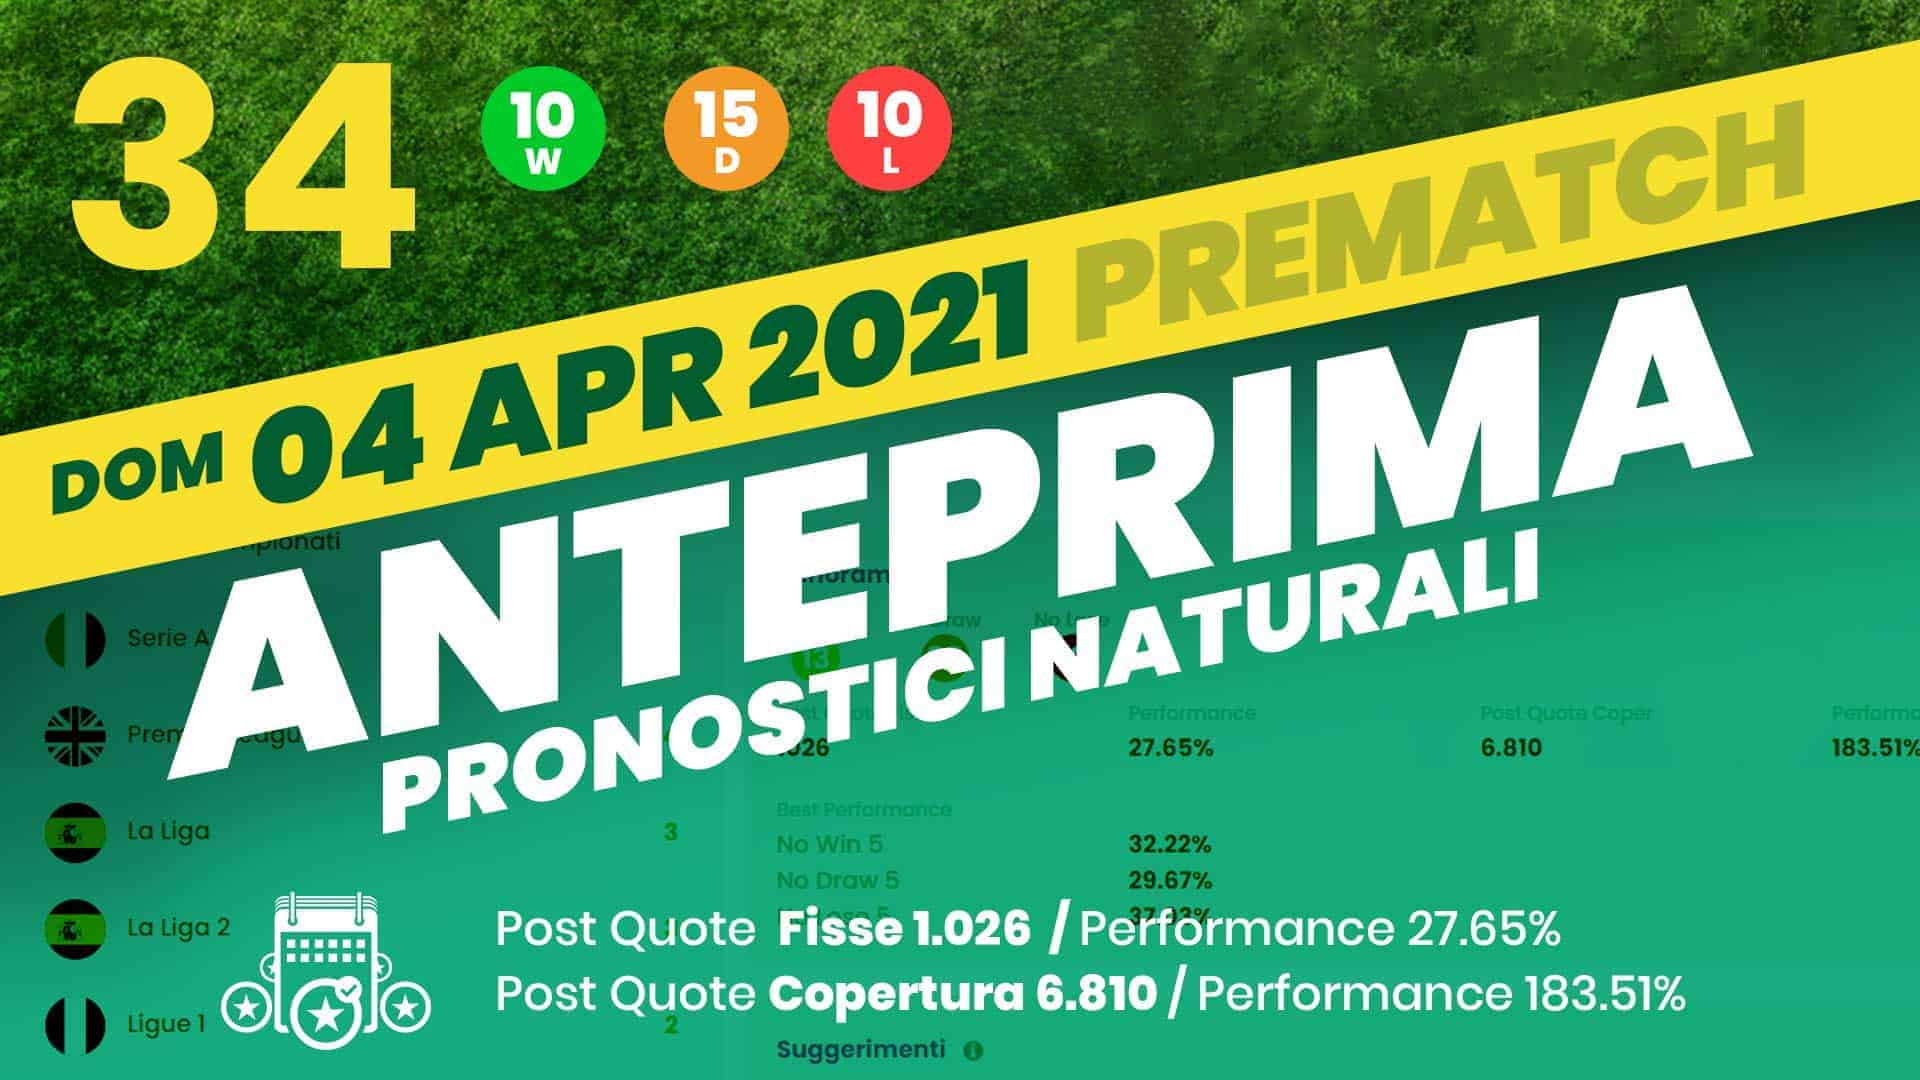 Pronostici Naturali Video Analisi Scommesse Betting Calcio Analisi Pre Partite Domenica 4 Aprile 2021